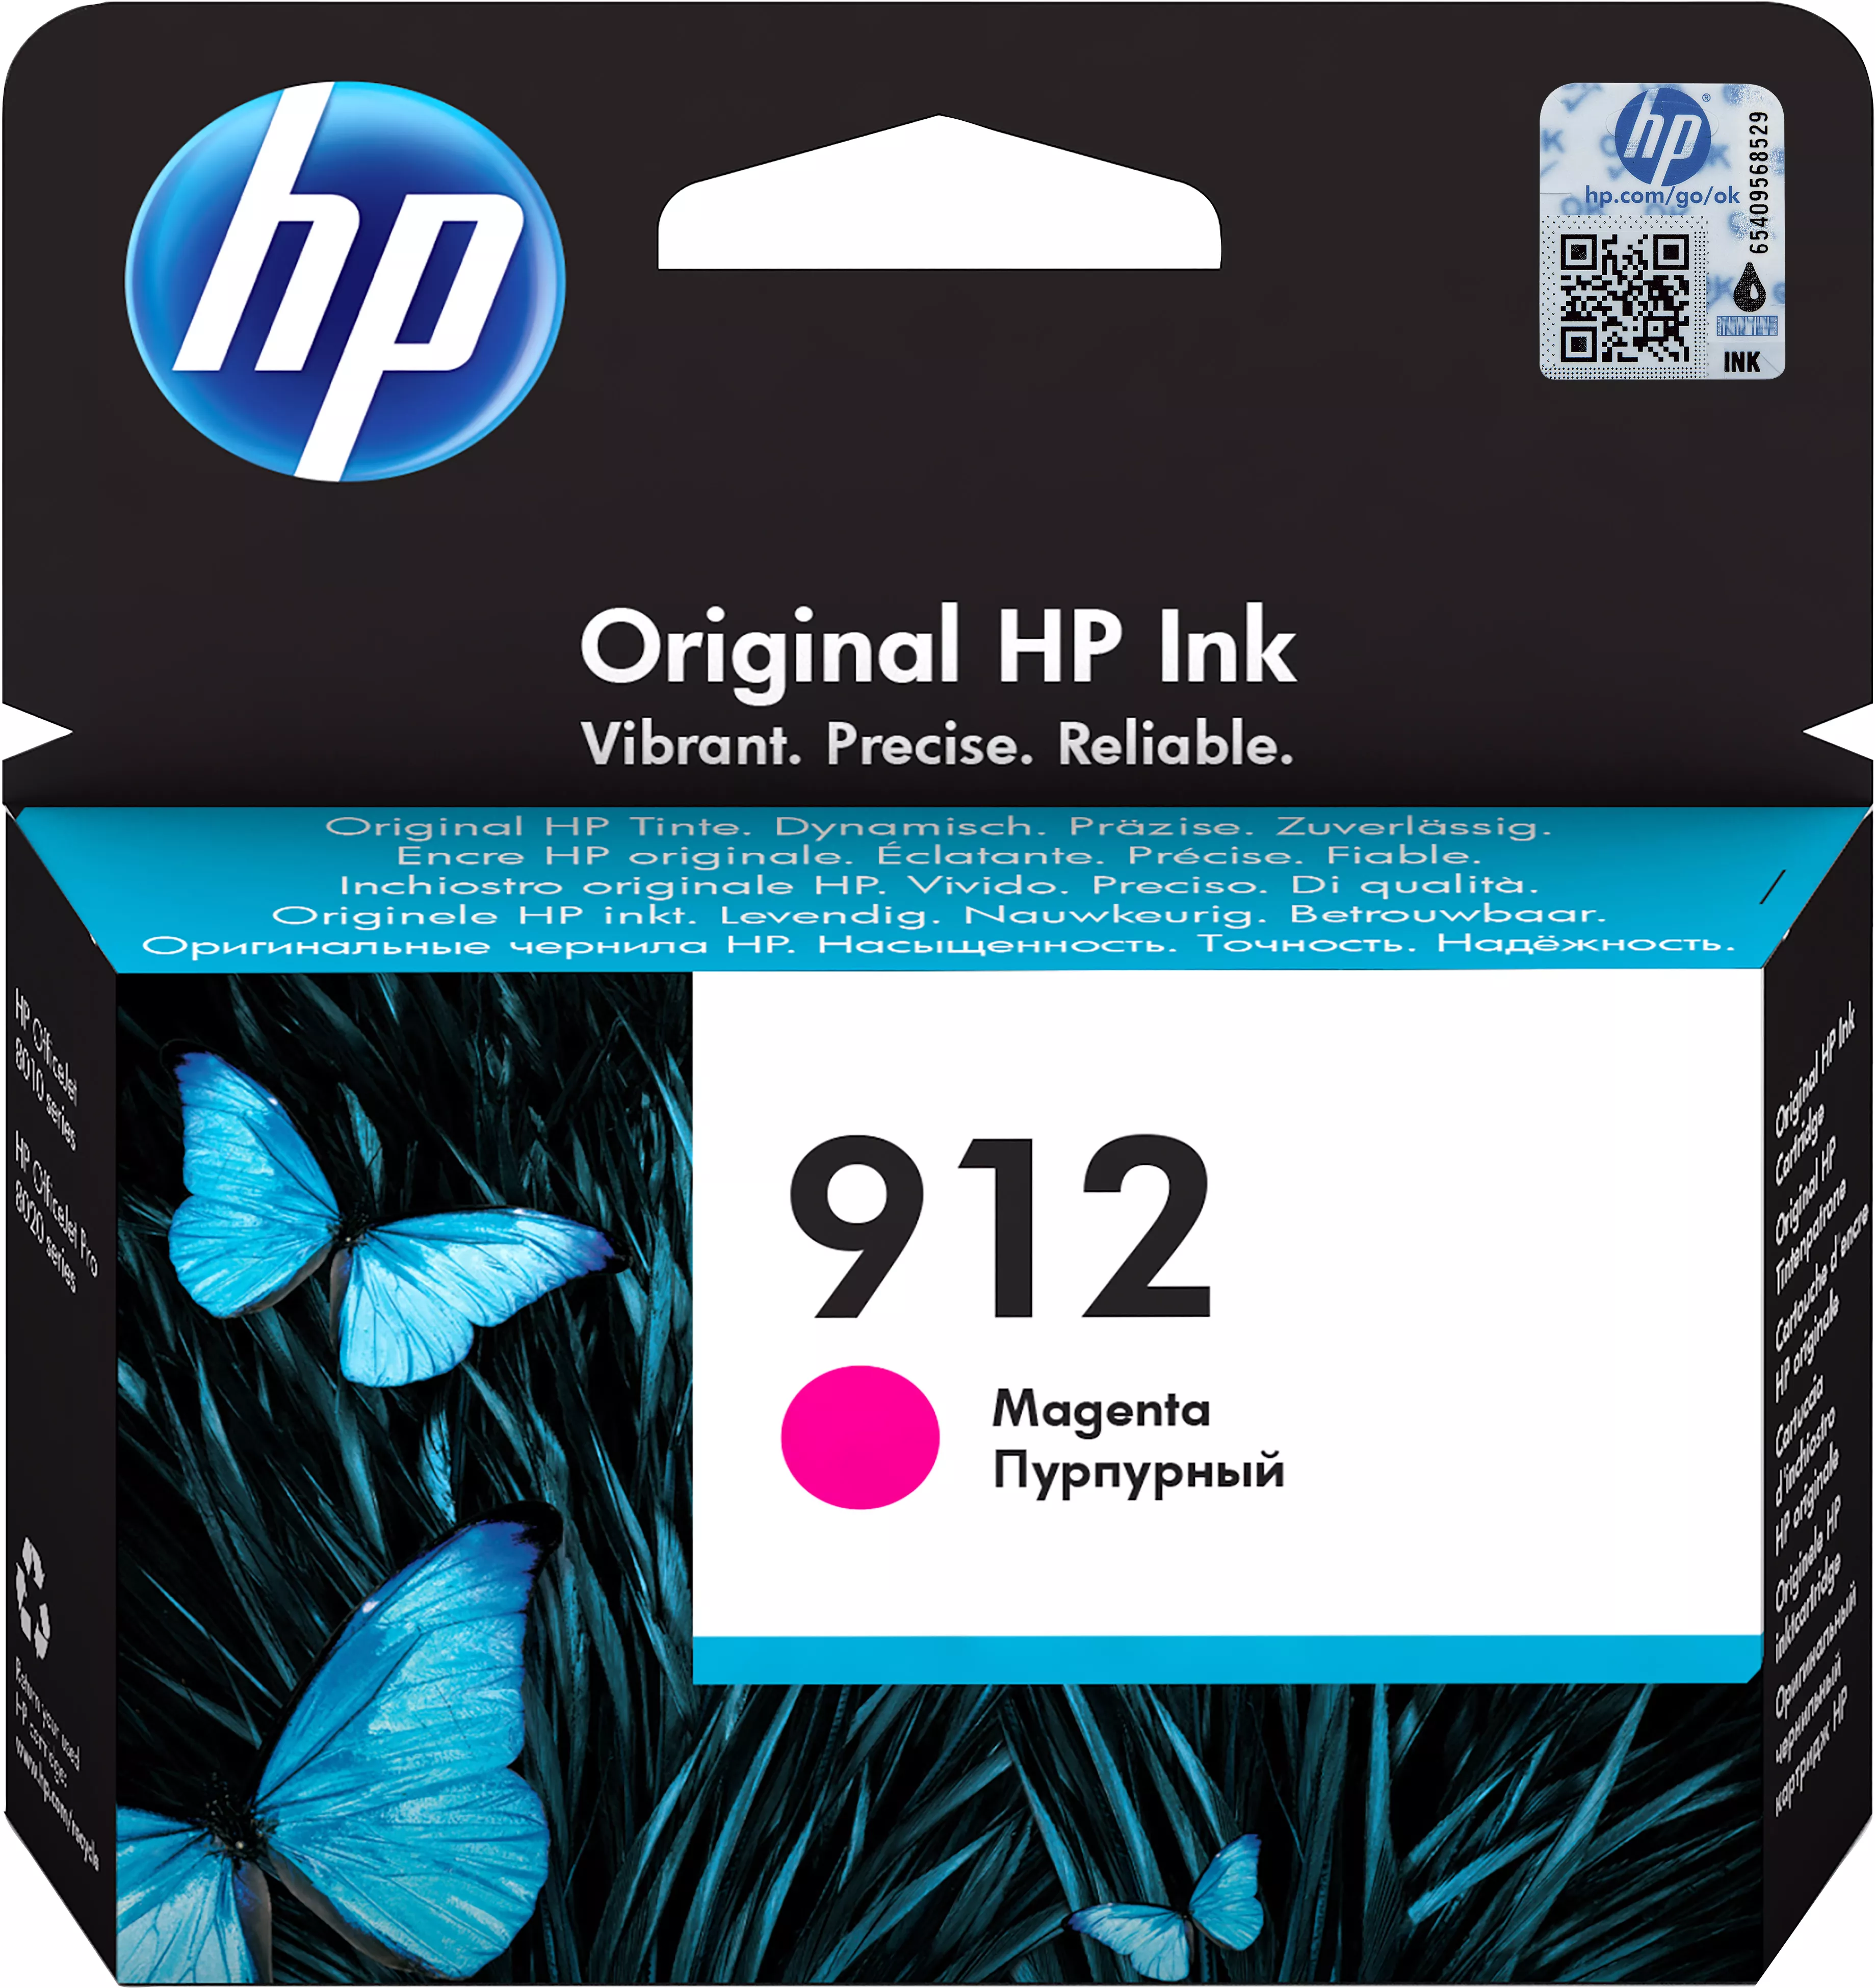 Achat HP 912 Magenta Ink Cartridge sur hello RSE